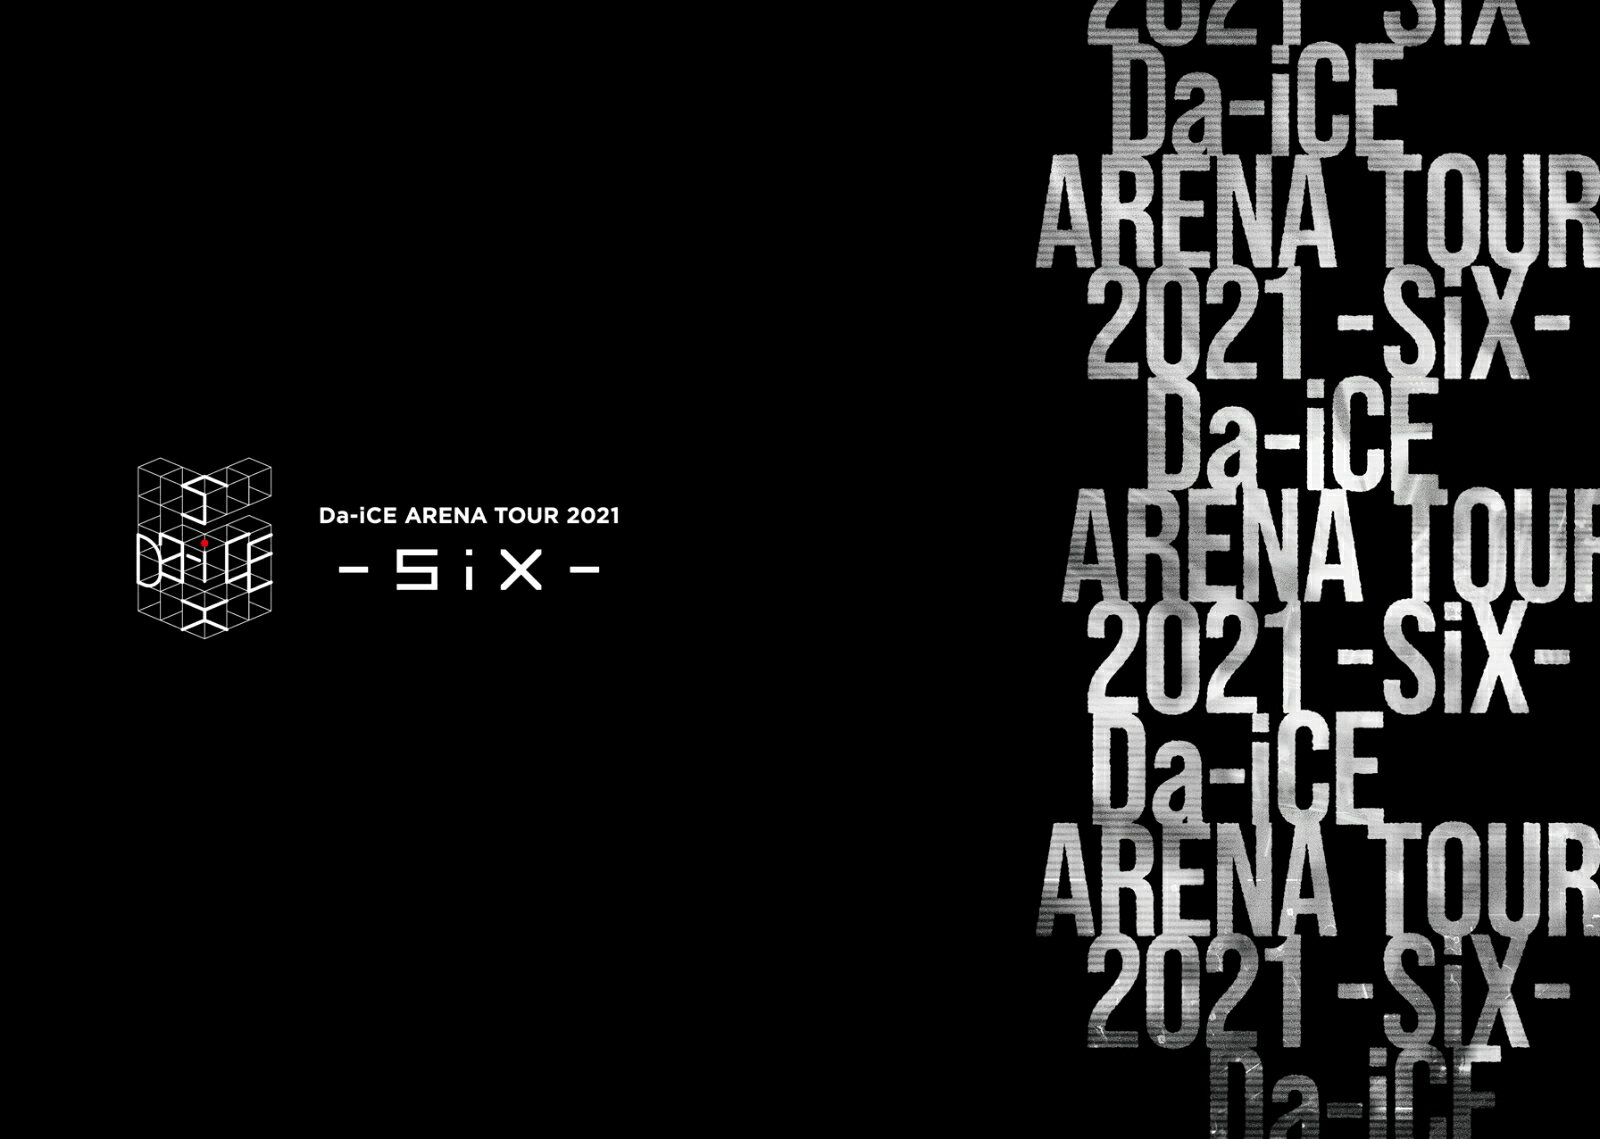 【先着特典】Da-iCE ARENA TOUR 2021 -SiX-(初回生産限定 Blu-ray Disc3枚組(スマプラ対応))【Blu-ray】(ポストカードSide Aデザイン + ポストカードSide Bデザイン)